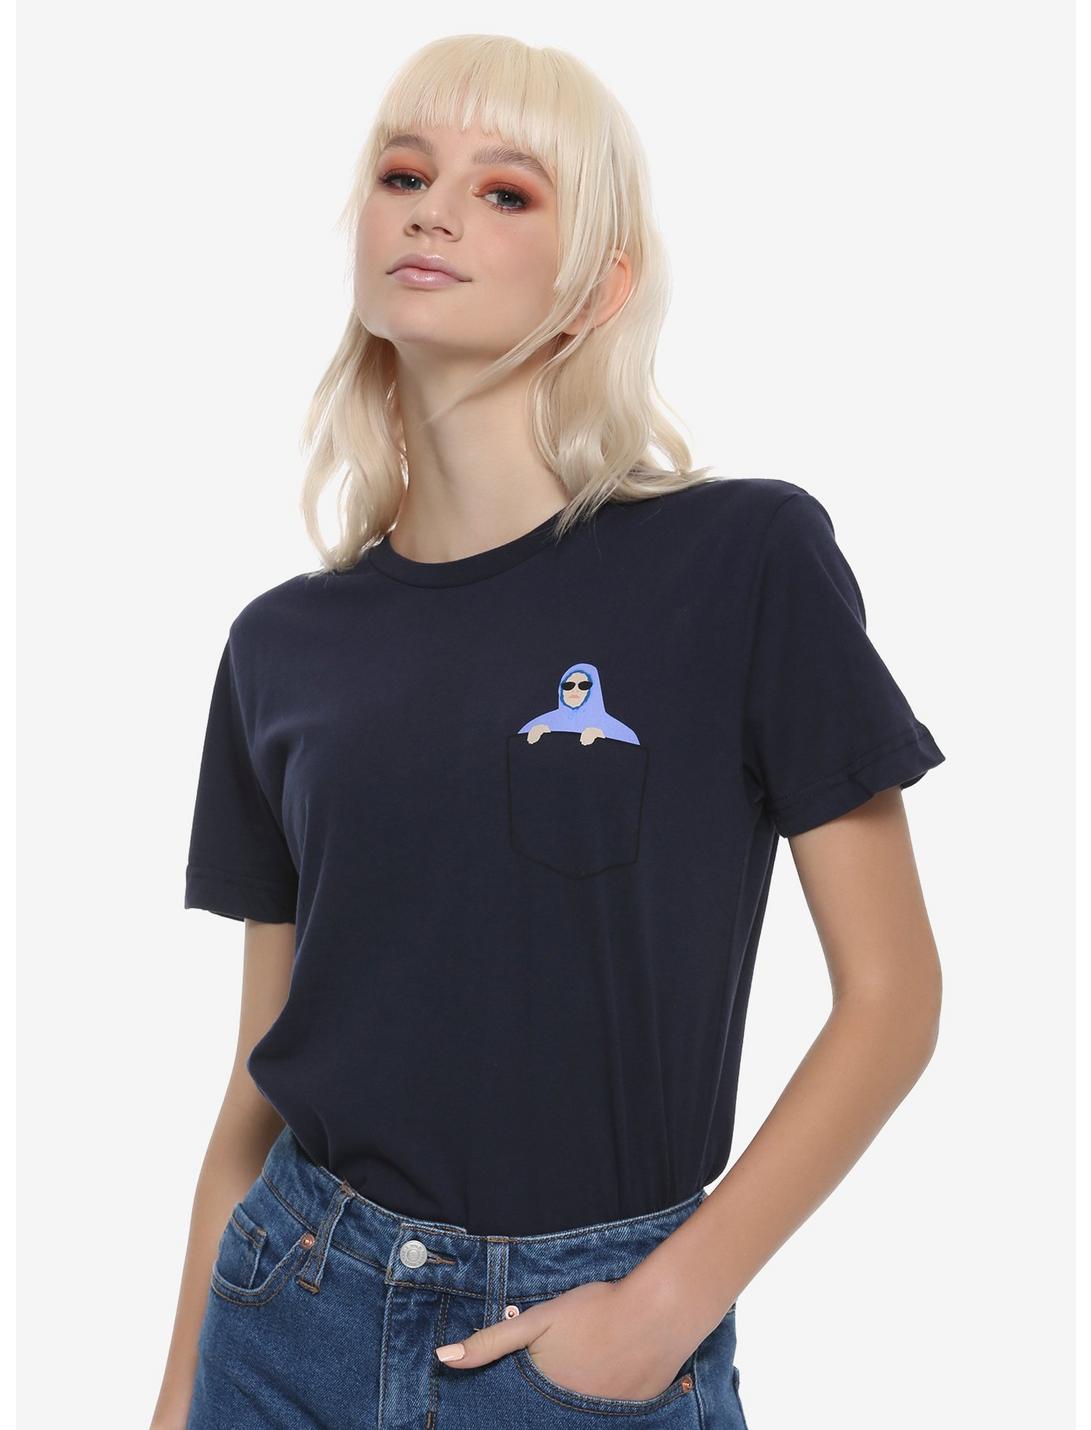 Mean Girls Damien Pocket Girls T-Shirt, BLUE, hi-res